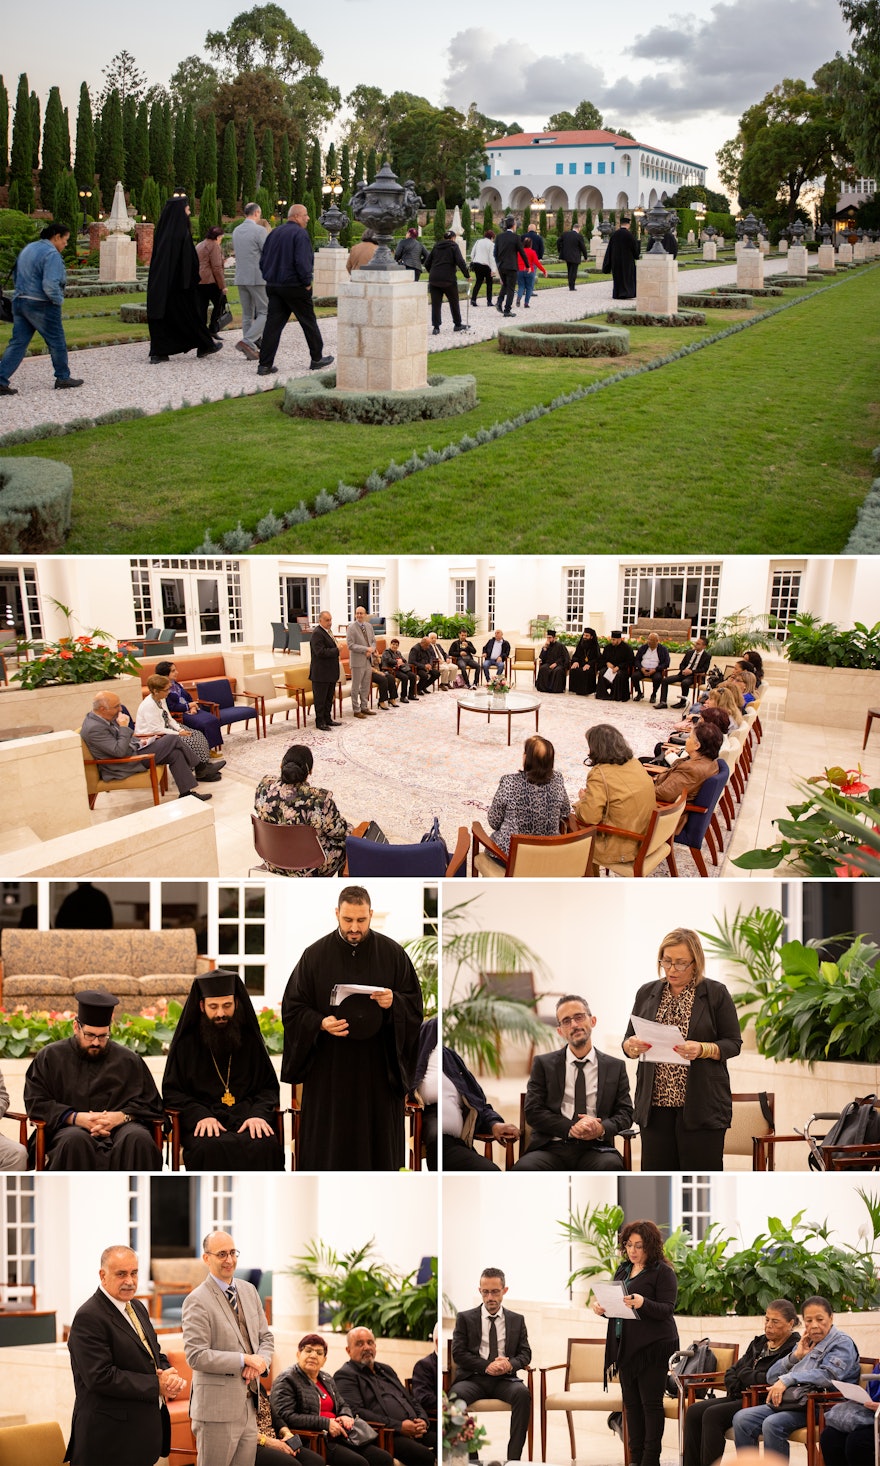 Una delegación de veinte miembros de la comunidad griega ortodoxa y miembros del Consejo Congregacional, así como del Movimiento de Mujeres del Arzobispado, visitaron el Santuario de Bahá’u’lláh para seguidamente reunirse para orar en el Centro de Visitantes de Bahjí.